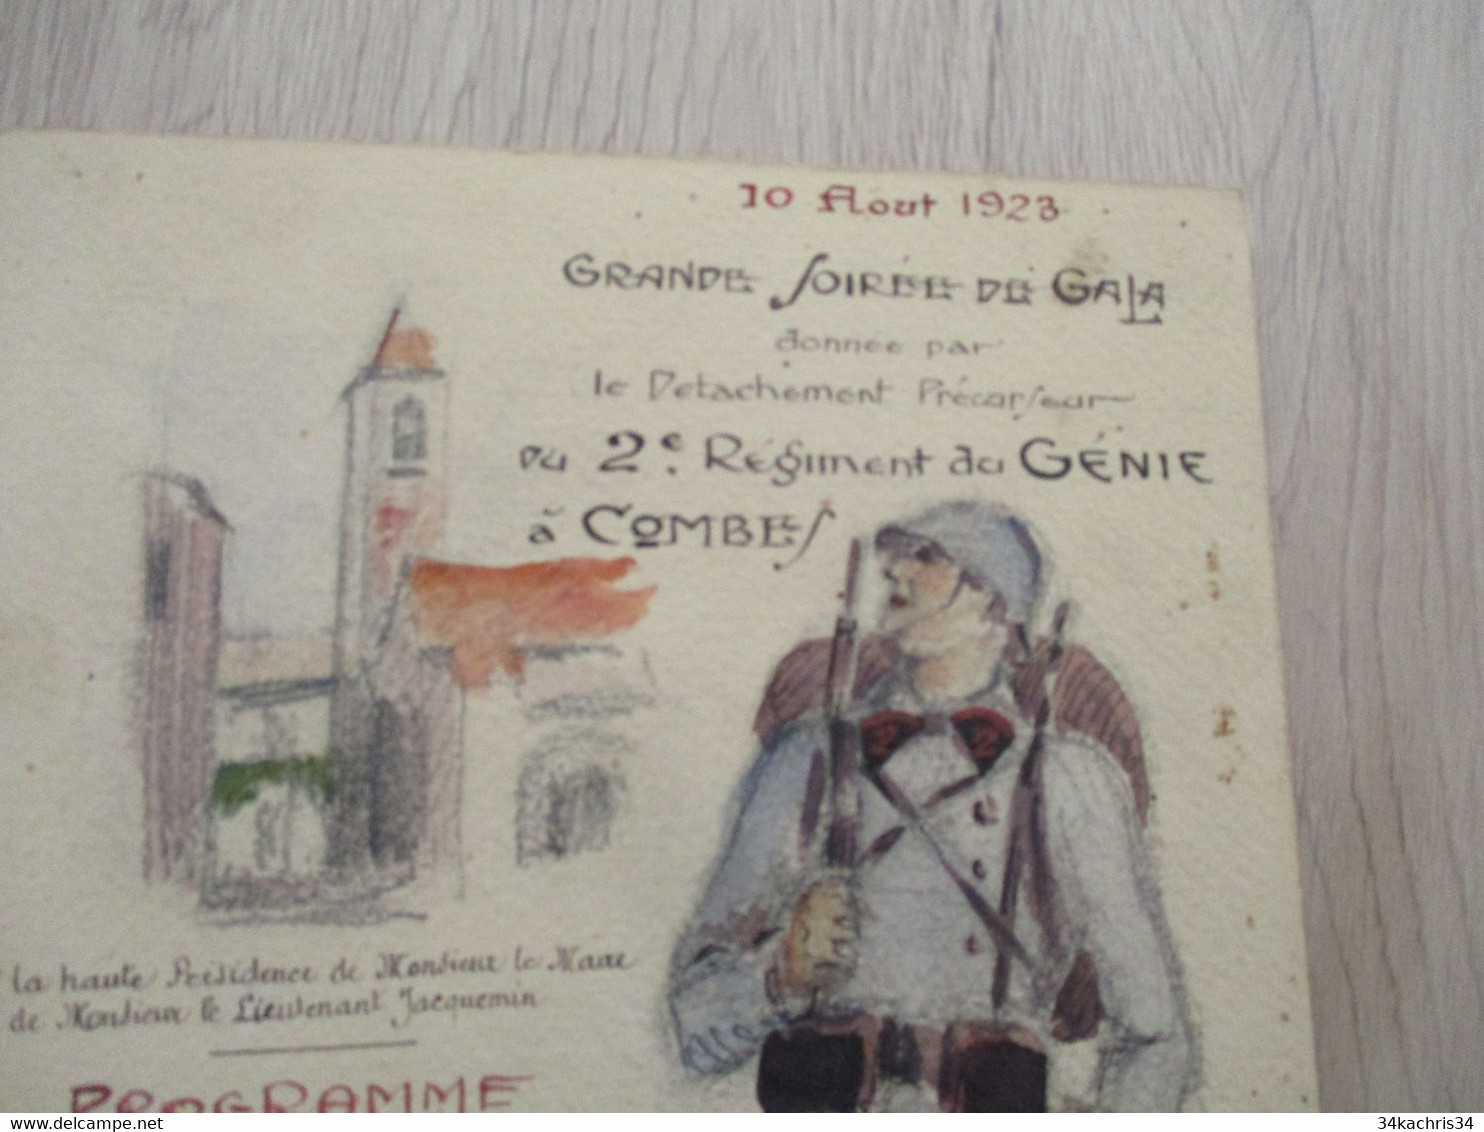 Menu Manuscrit  Dessin Original Combes 10/08/1923 Grande Soirée De Gala Détachement Précurseur Du 2ème Régiment Génie - Menú